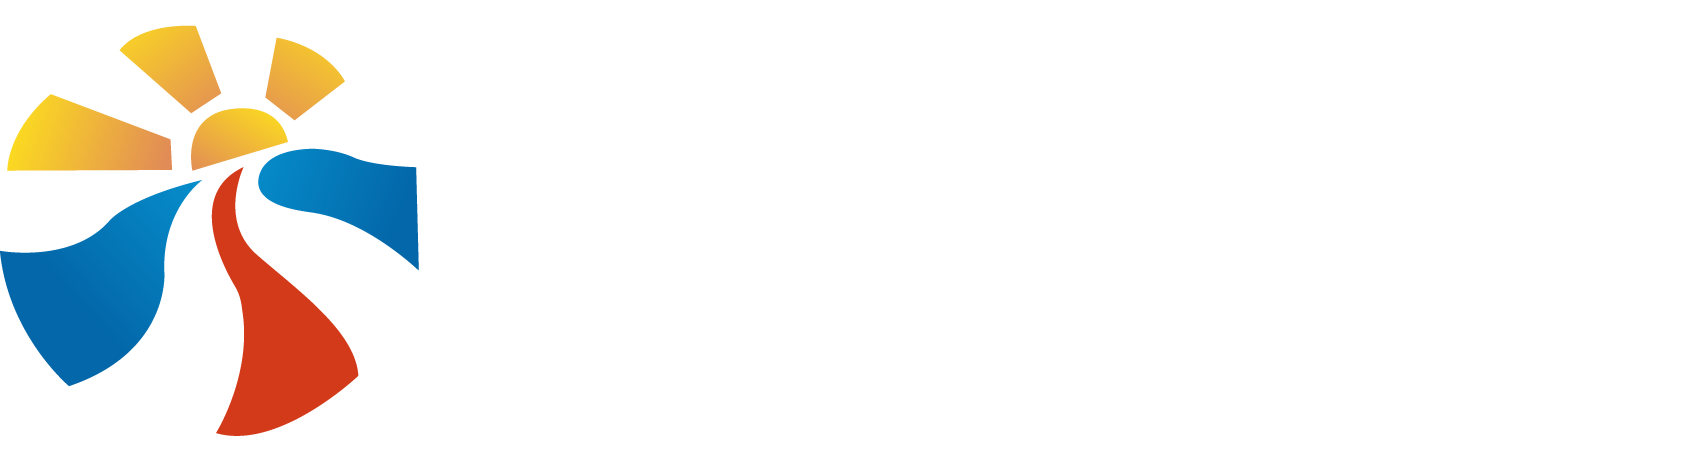 LOGO - CONSELHO DE DEFESA DOS DIREITOS DA PESSOA COM DEFICIÊNCIA